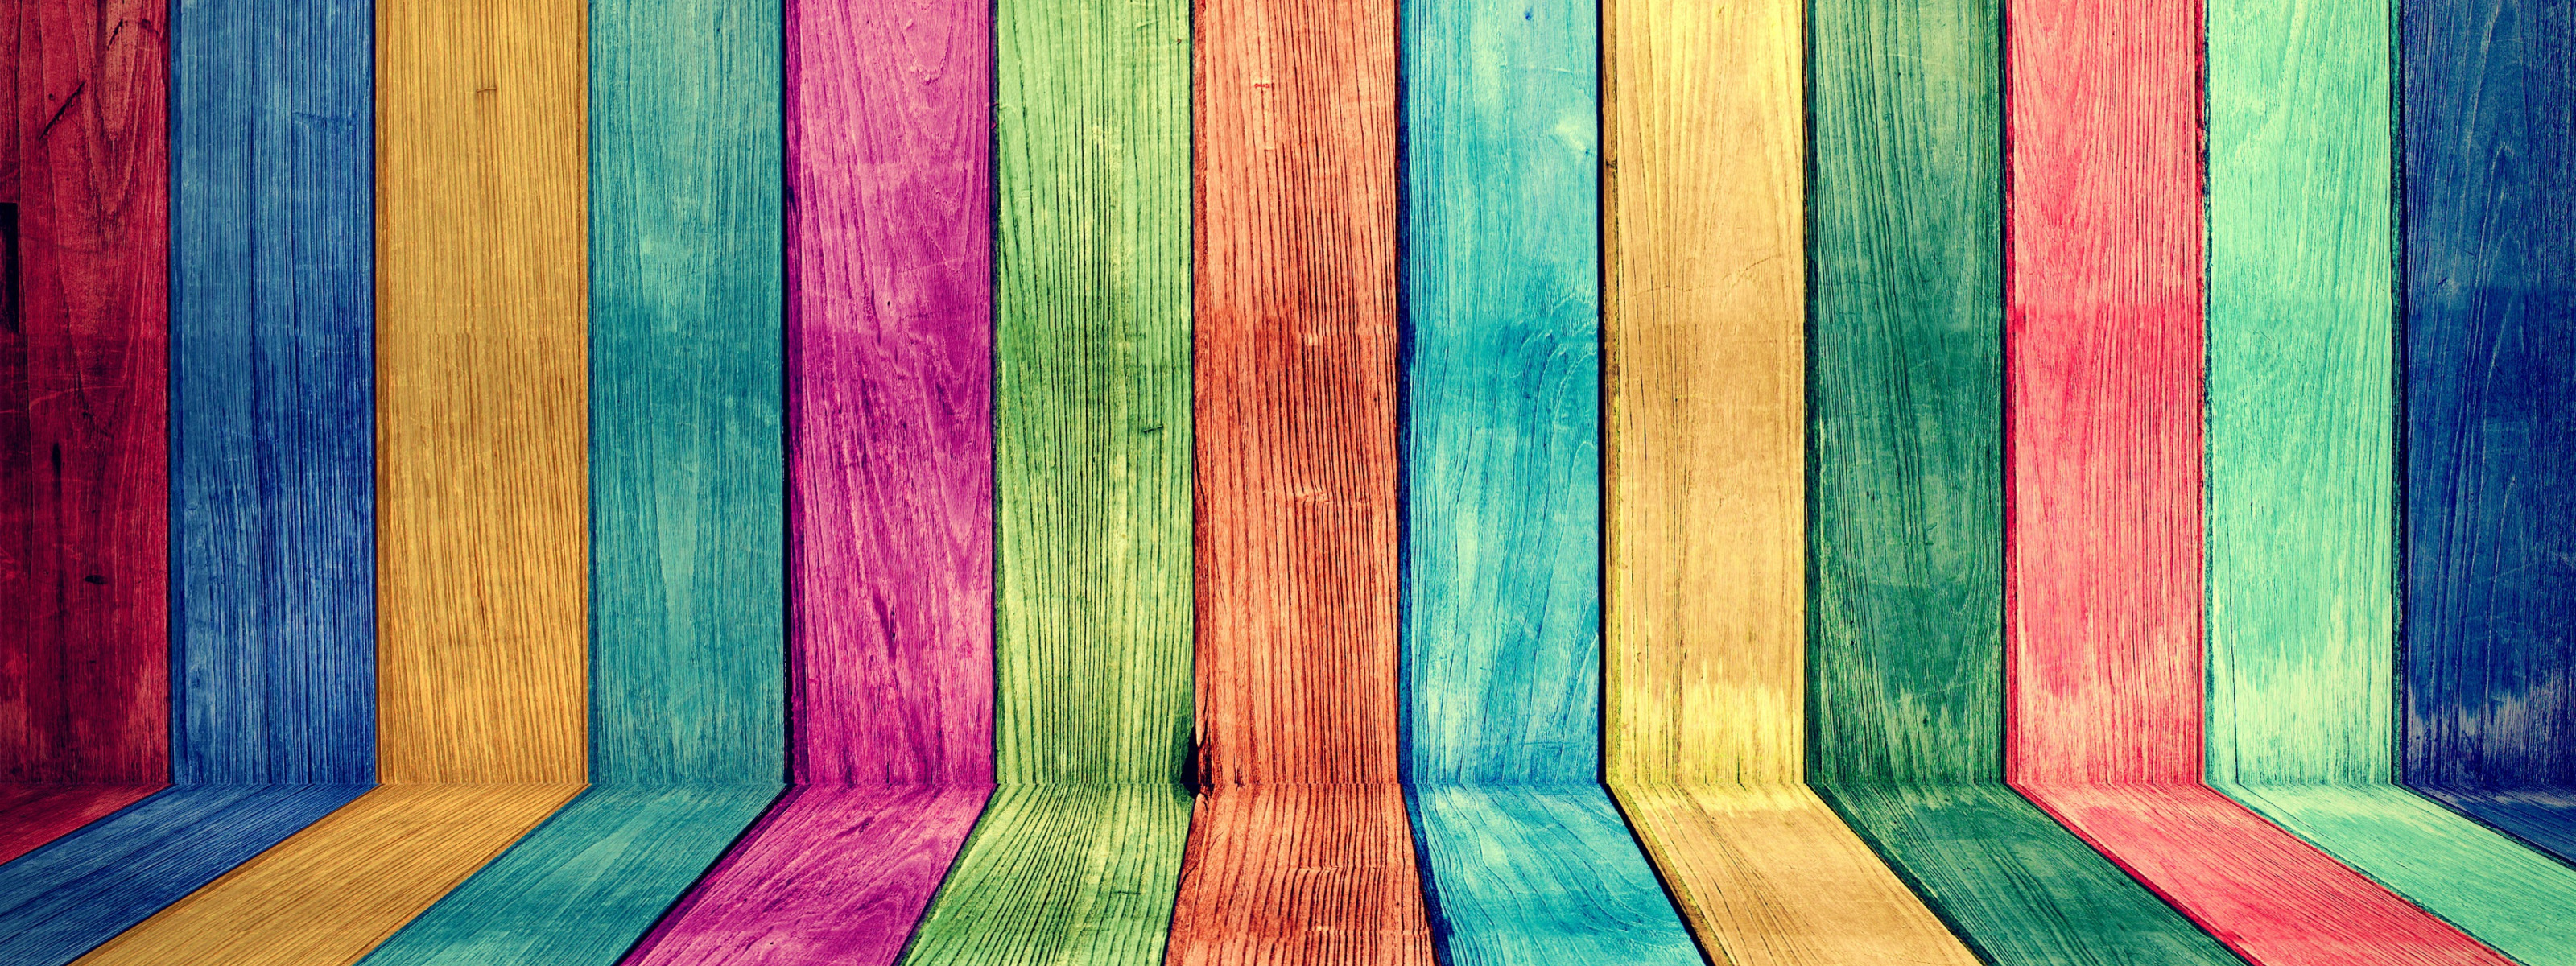 Доска цветная. Разноцветные доски. Цветные дощечки. Разноцветные доски текстура. Яркие краски по дереву.